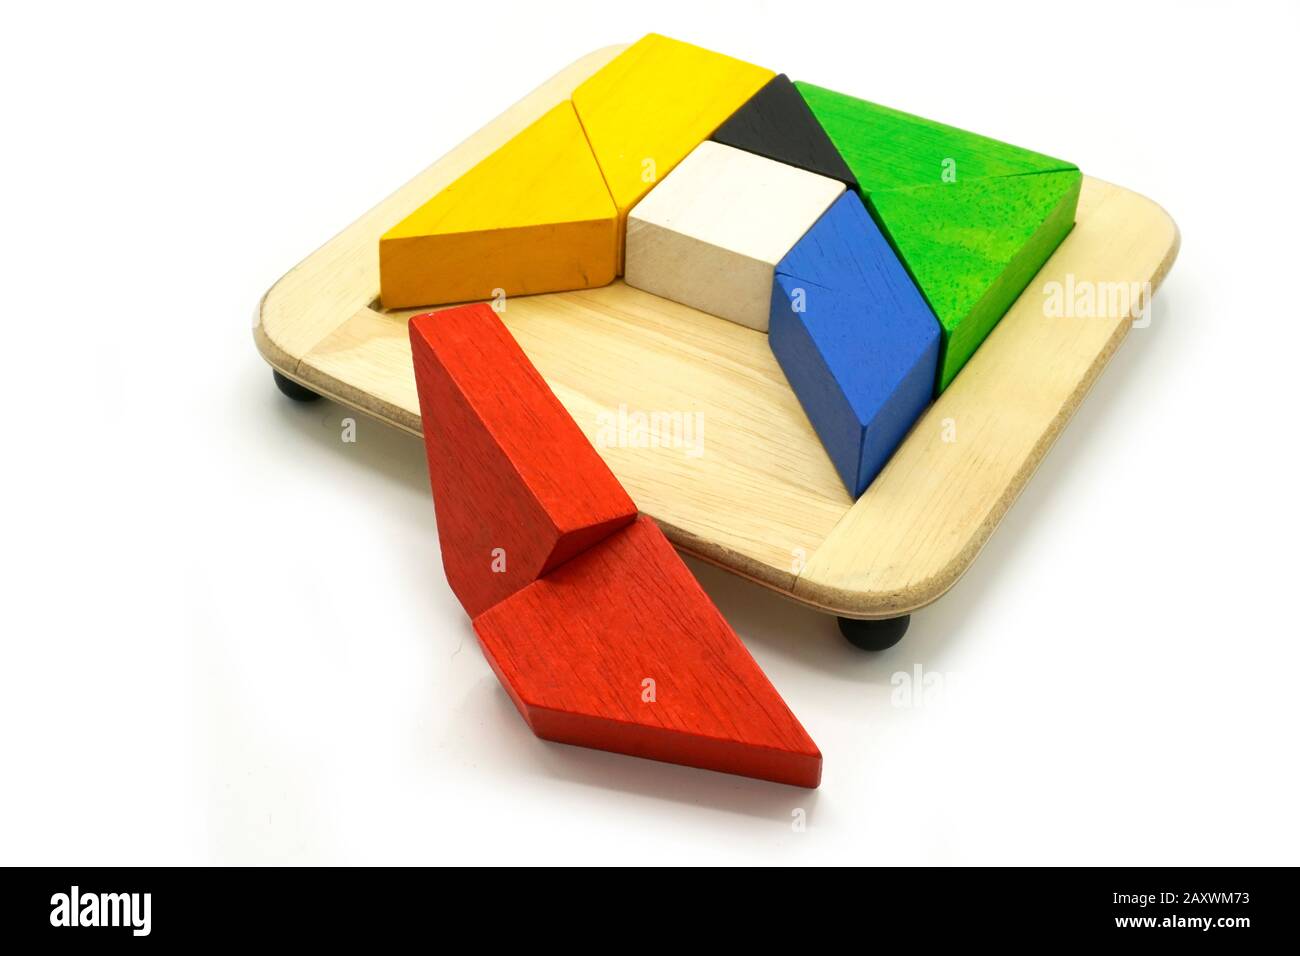 Tangram, juego de rompecabezas tradicional chino hecho de diferentes piezas  de madera de colores que se reúnen en una forma distinta, en una caja de  madera. Aislado encendido Fotografía de stock -